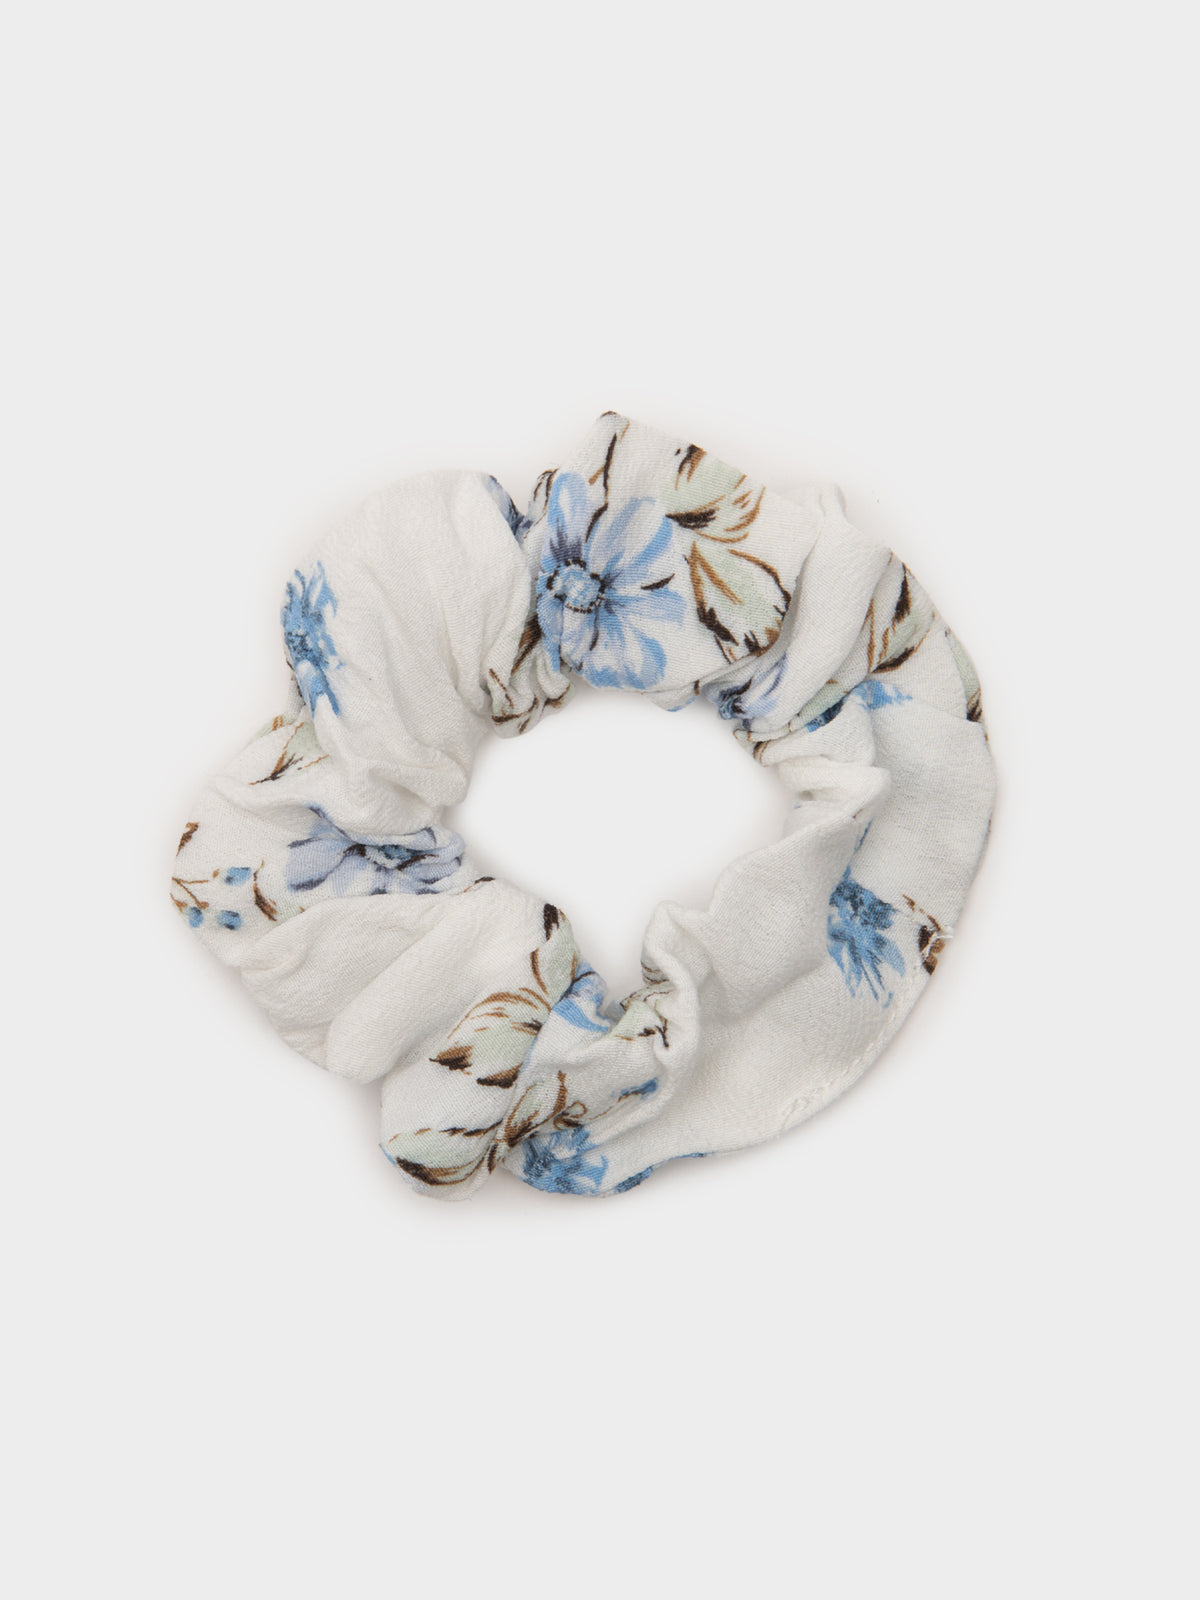 Verona Scrunchie in White and Blue